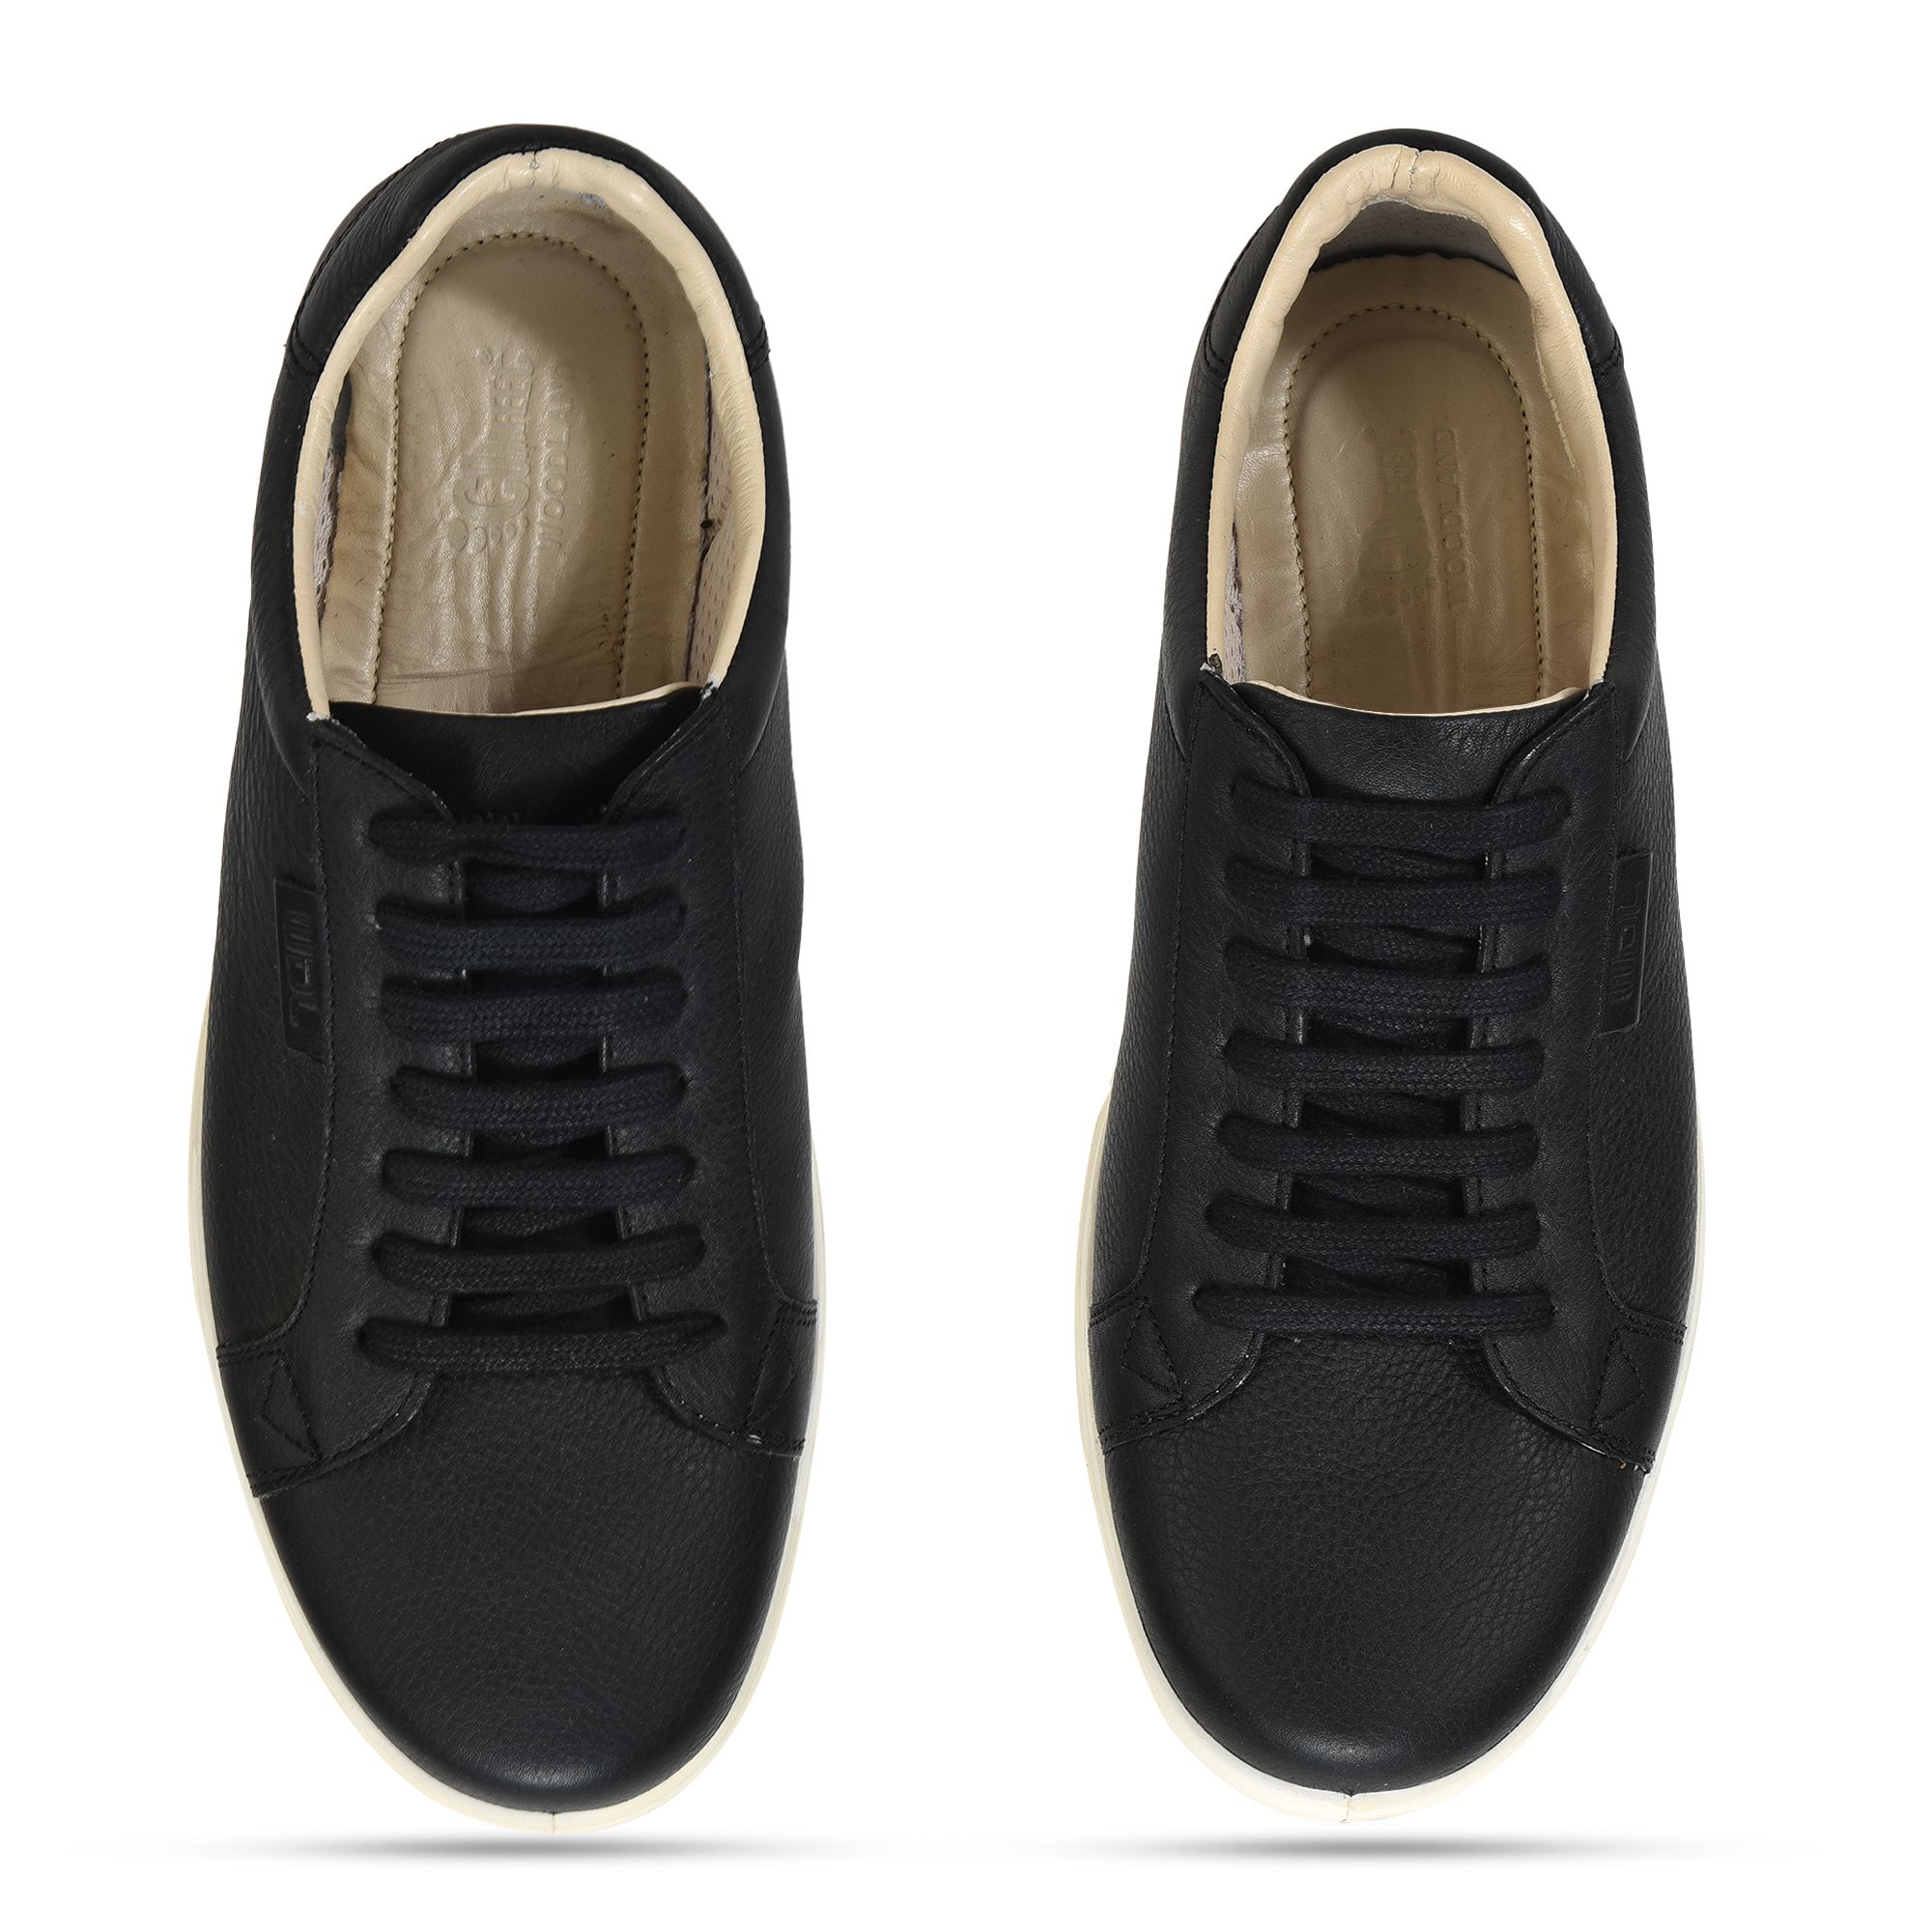 Woodland BLACK sneakers